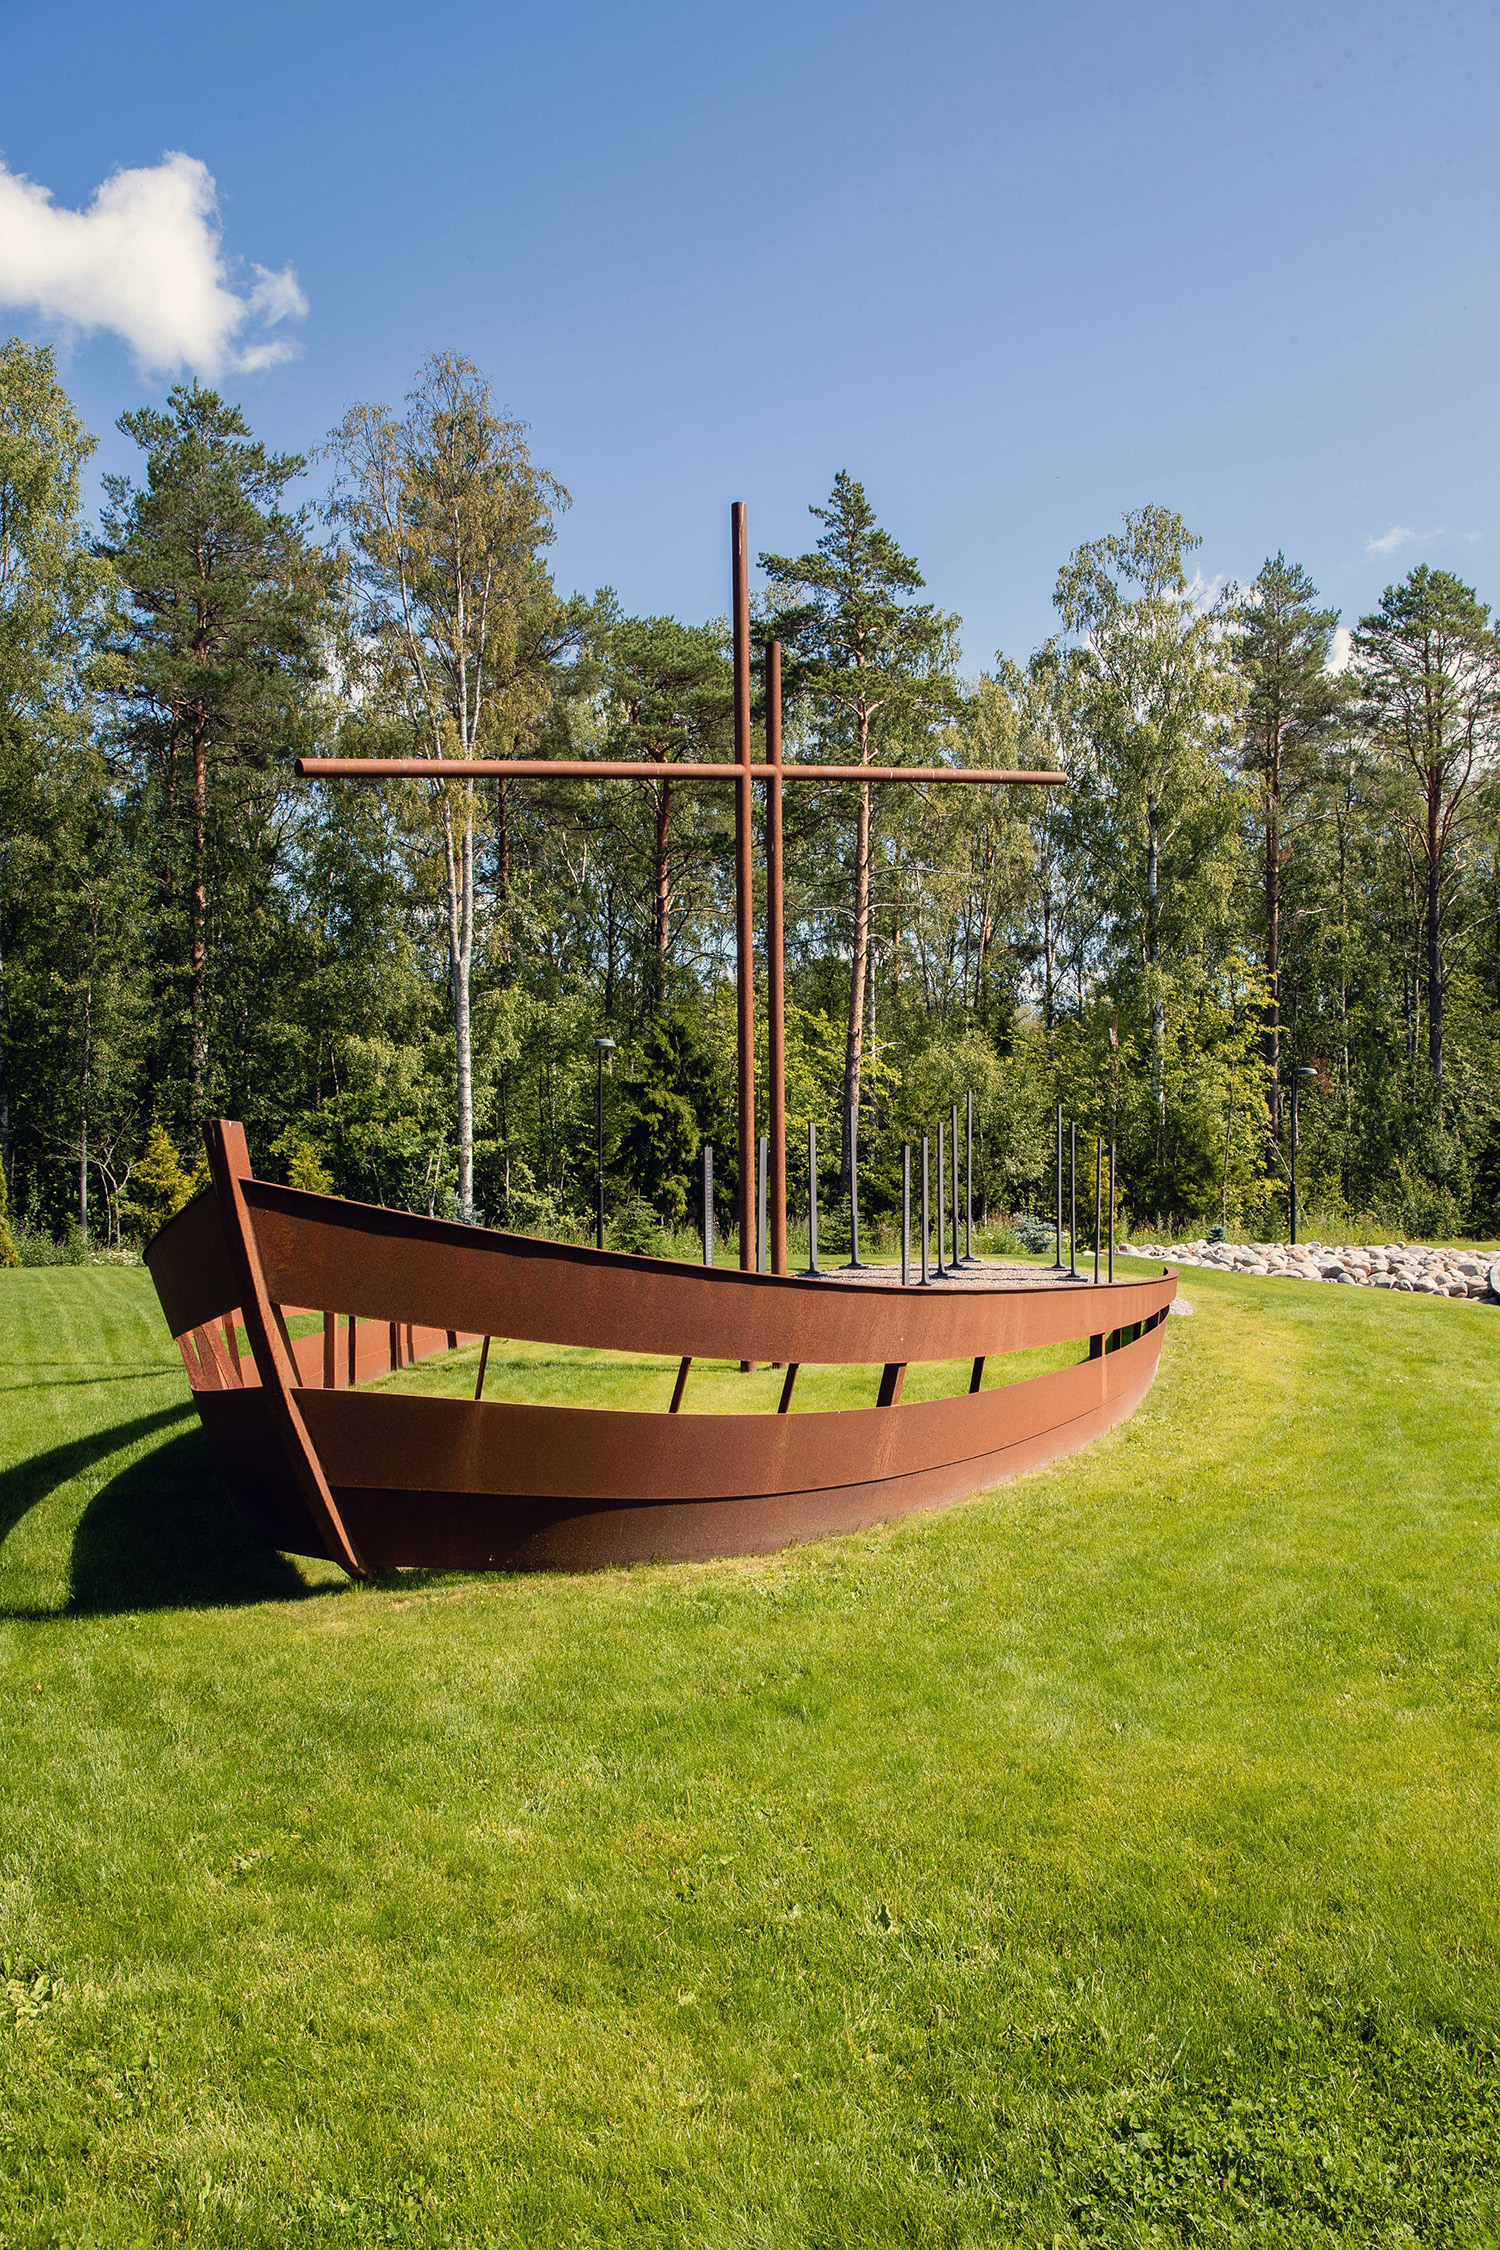 Ett minnesmärke av rostigt järn som föreställer skrovet av en båt med mast.